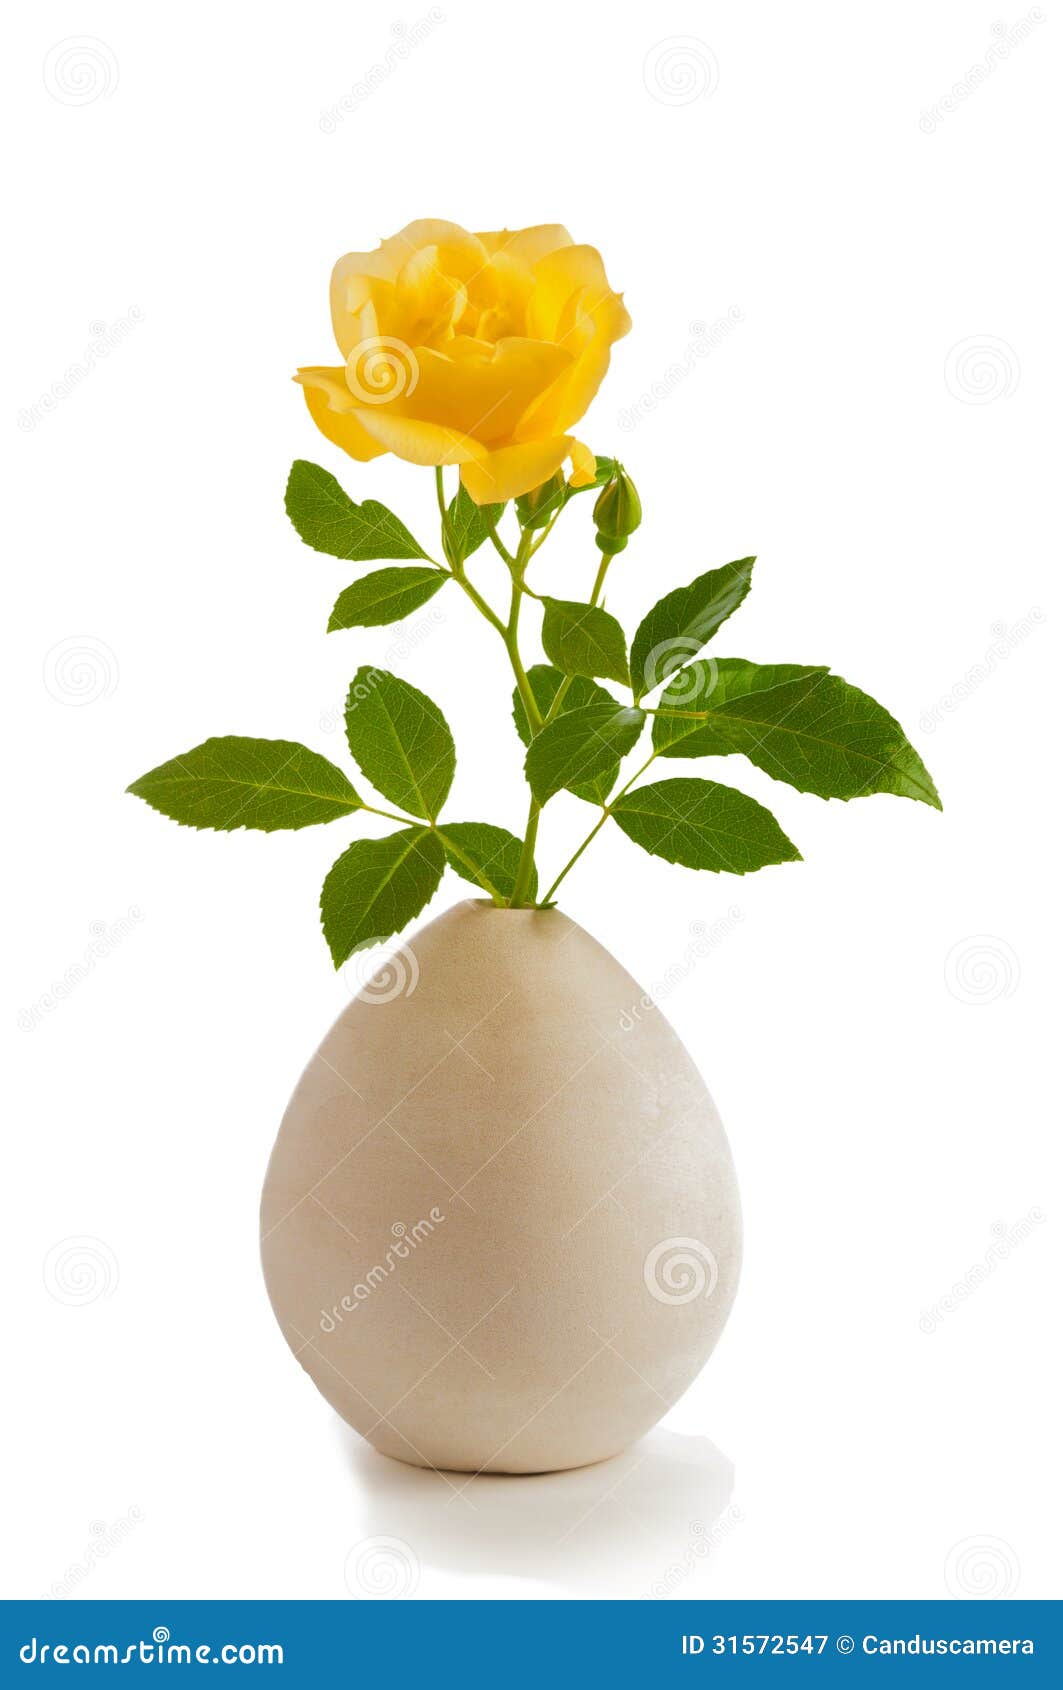 jolie  simple rose jaune sur une tige avec des feuilles de vert dans clay vase gris ou blanc sur